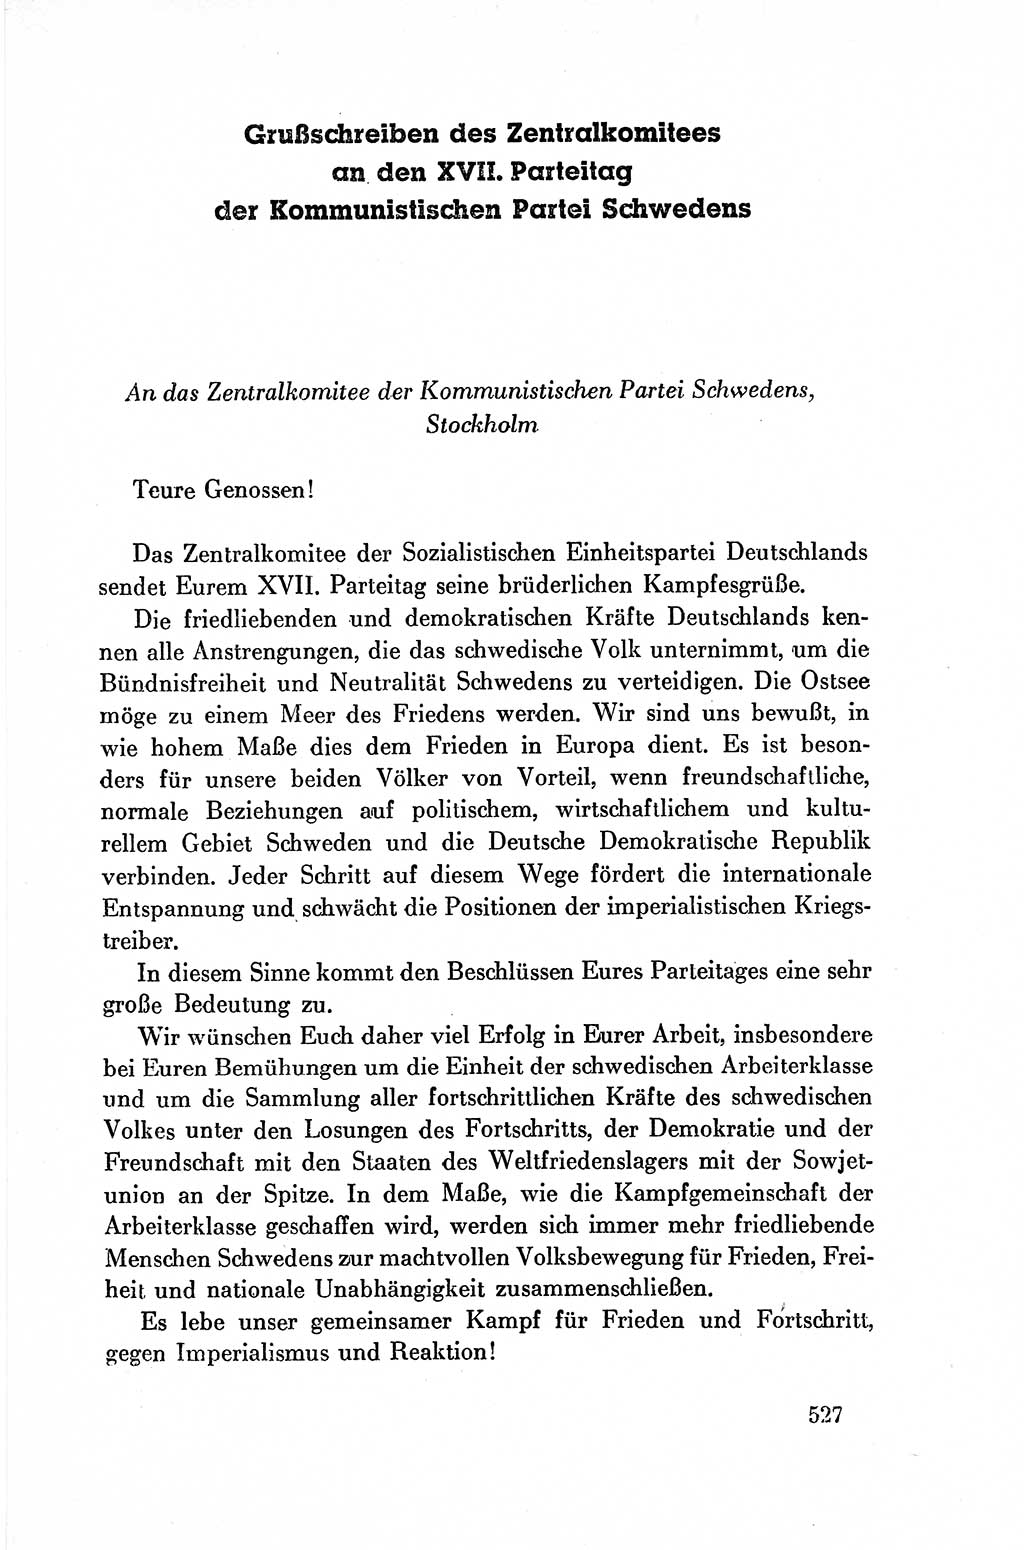 Dokumente der Sozialistischen Einheitspartei Deutschlands (SED) [Deutsche Demokratische Republik (DDR)] 1954-1955, Seite 527 (Dok. SED DDR 1954-1955, S. 527)